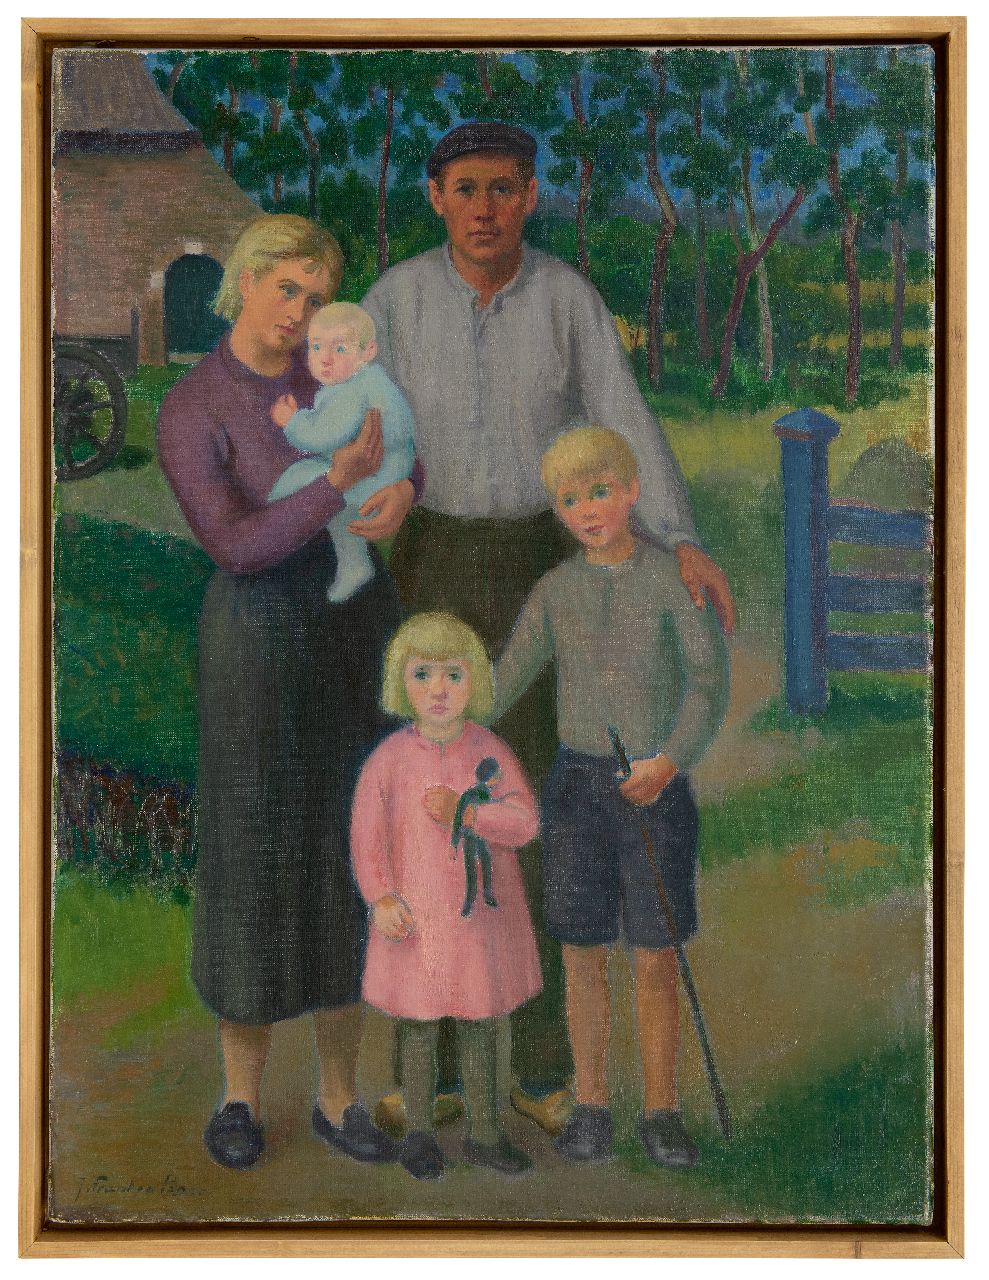 Franken J.H.  | Joannes Henricus 'Jan' Franken | Schilderijen te koop aangeboden | Boerenfamilie, olieverf op doek 60,3 x 45,4 cm, gesigneerd linksonder